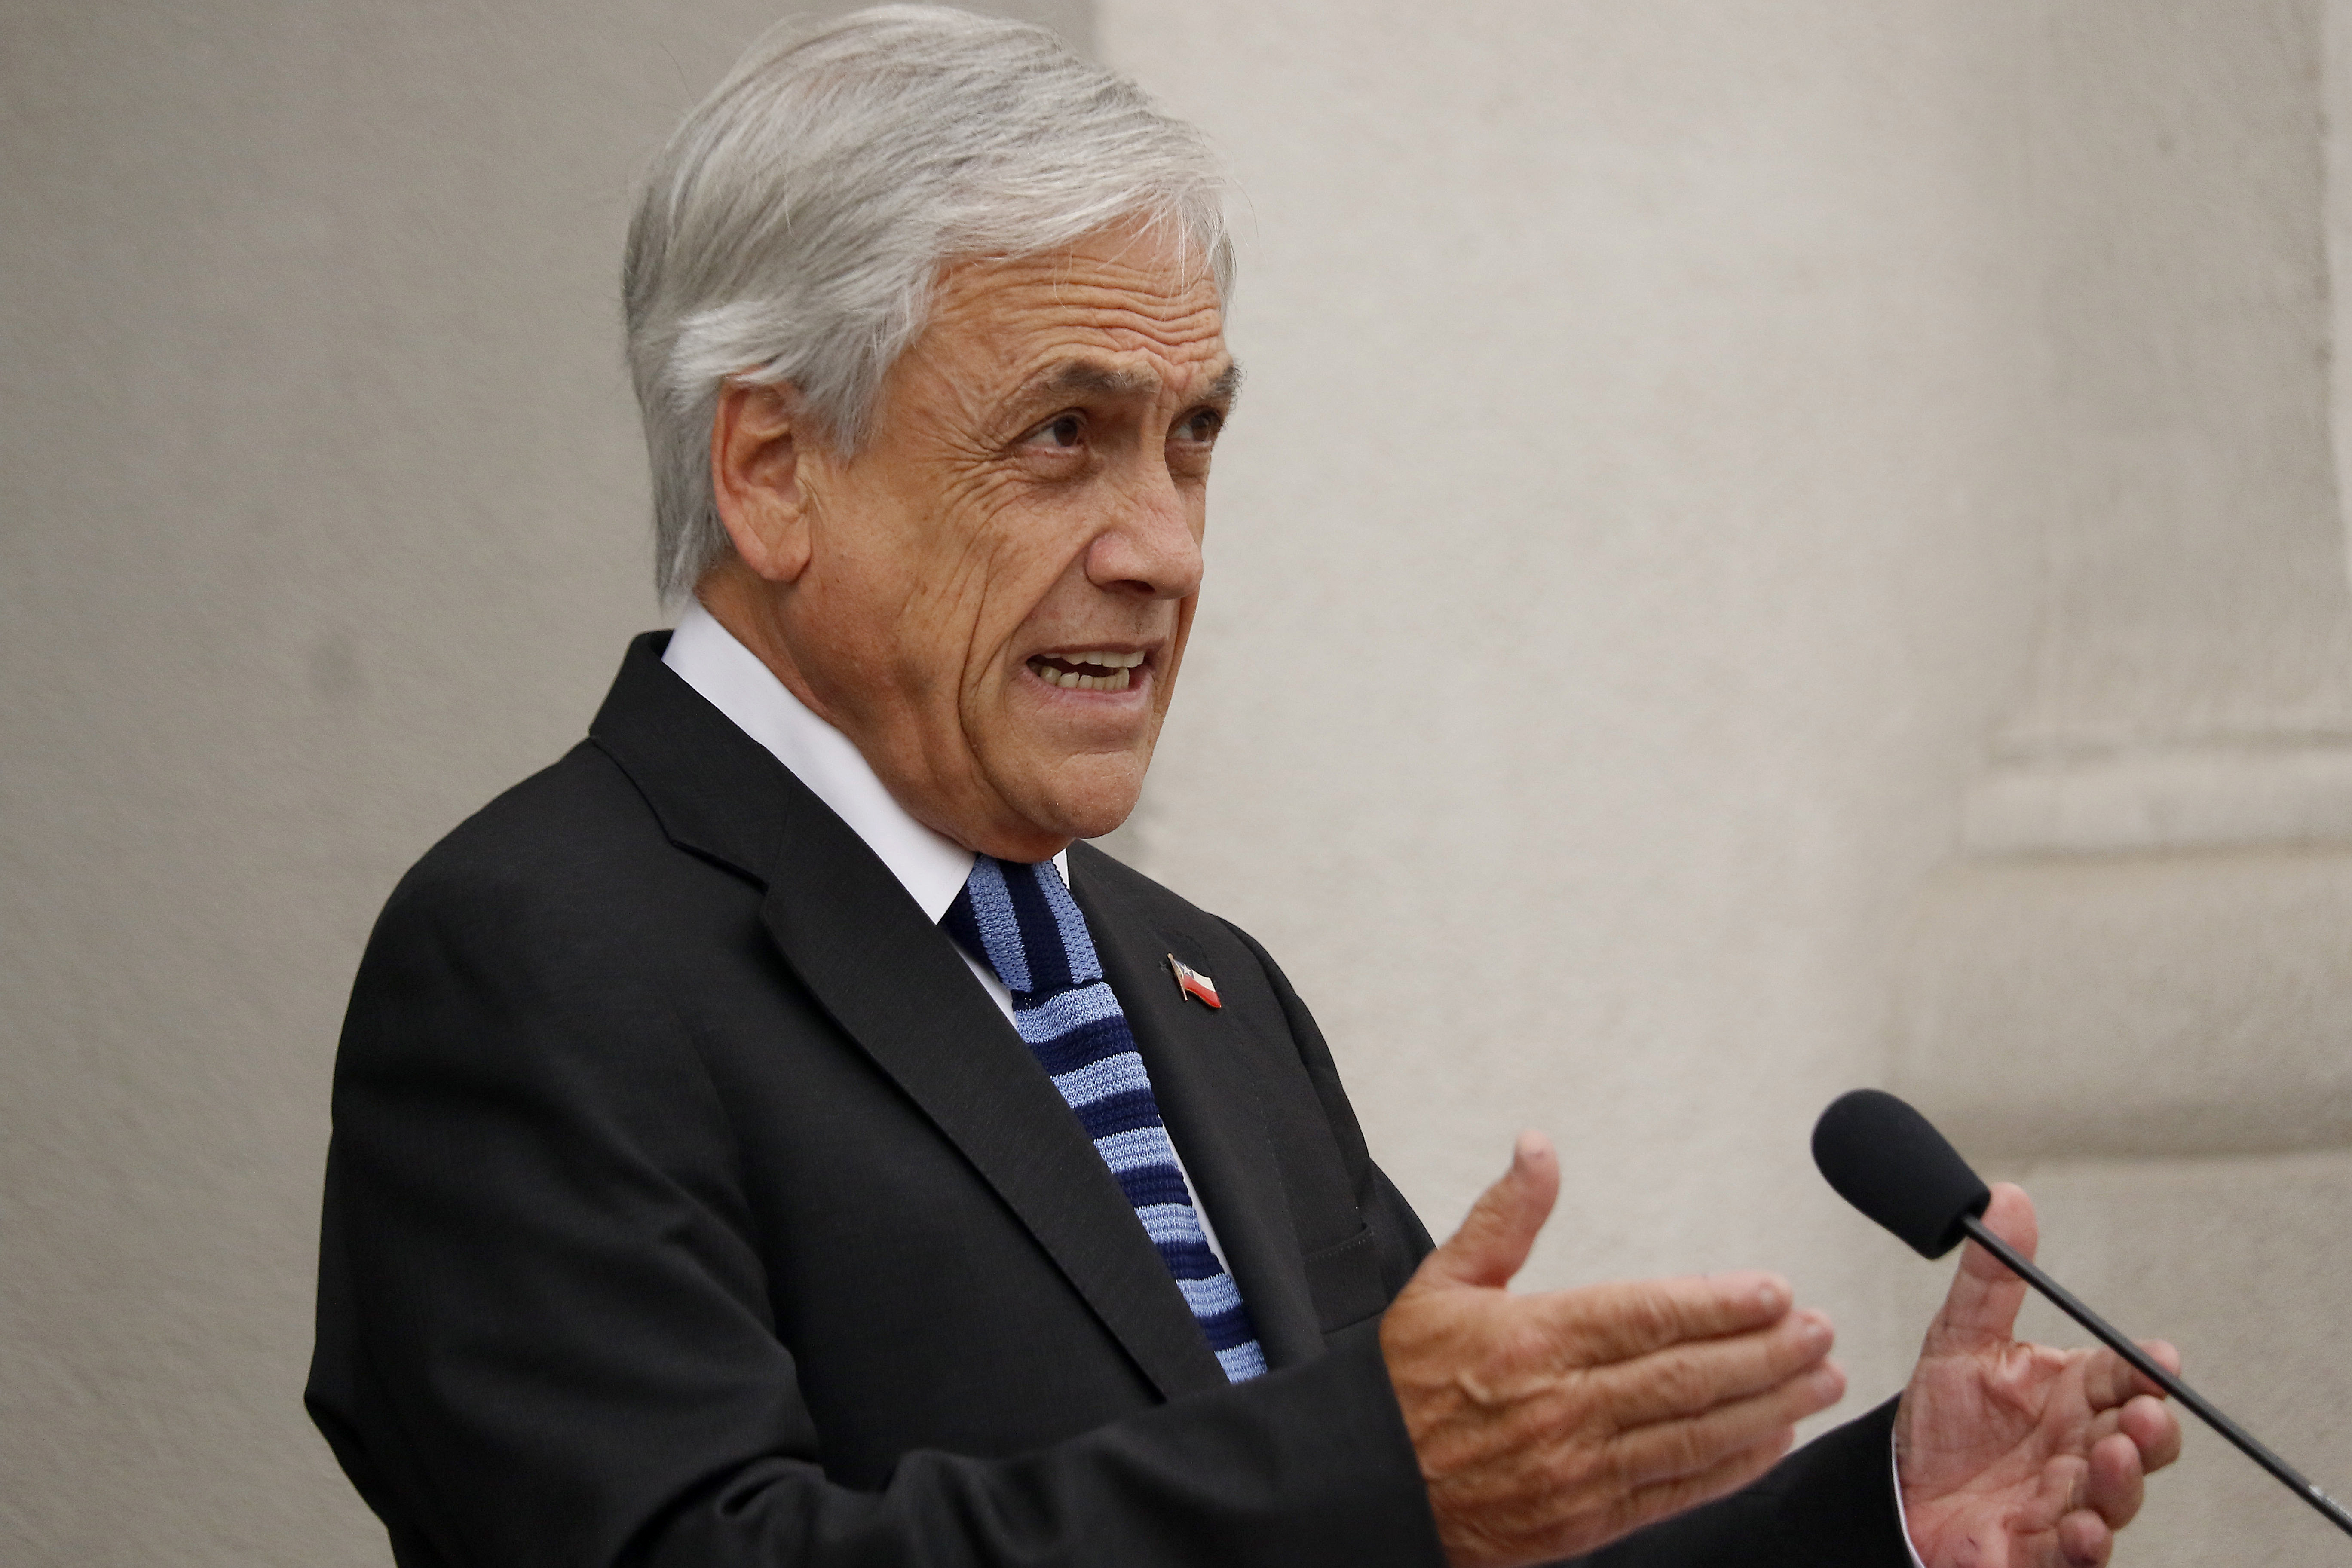 14 DE DICIEMBRE DE 2018/SANTIAGO El Presidente de la República, Sebastián Piñera, reiteró las razones por las cuales Chile no firmará el Tratado migratorio de la ONU. FOTO: LEONARDO RUBILAR CHANDIA/AGENCIAUNO